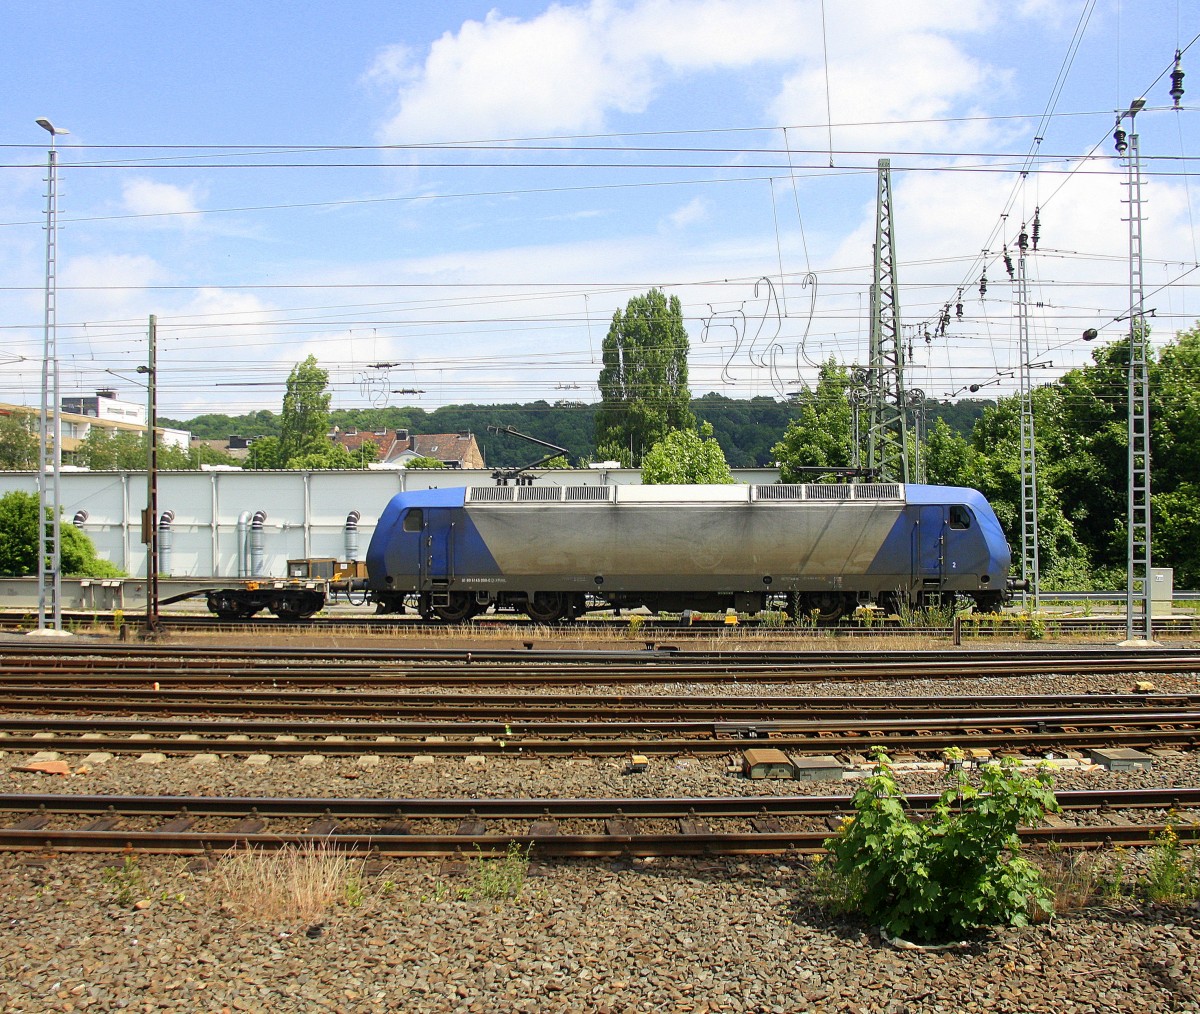 145 CL-202 von Crossrail fährt mit einem langen Containerzug aus Zeebrugge-Ramskapelle(B) nach Milano(I) bei der Ausfahrt aus Aachen-West und fährt in Richtung Aachen-Schanz,Aachen-Hbf,Köln. 
Aufgenommen vom Bahnsteig in Aachen-West. 
Bei schönem Sonnenschein am Mittag vom 13.6.2015.